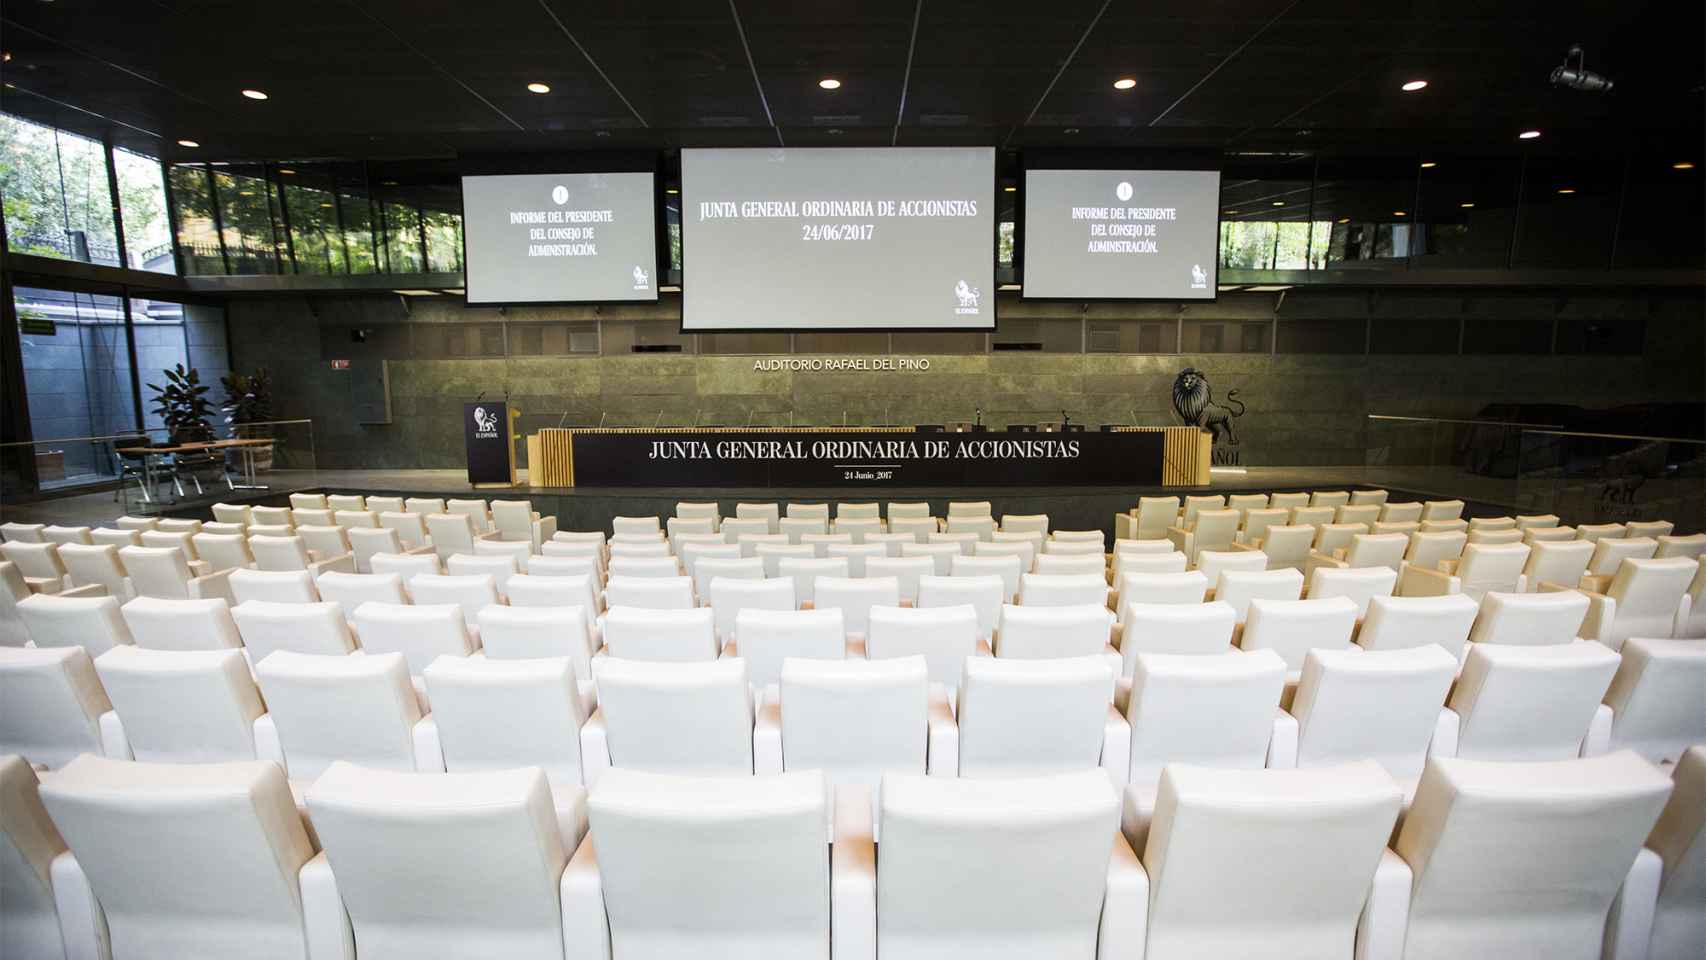 Vista general del Auditorio de la Fundación Rafael del Pino, donde se ha celebrado la Junta de Accionistas de EL ESPAÑOL. / Pablo Cobos